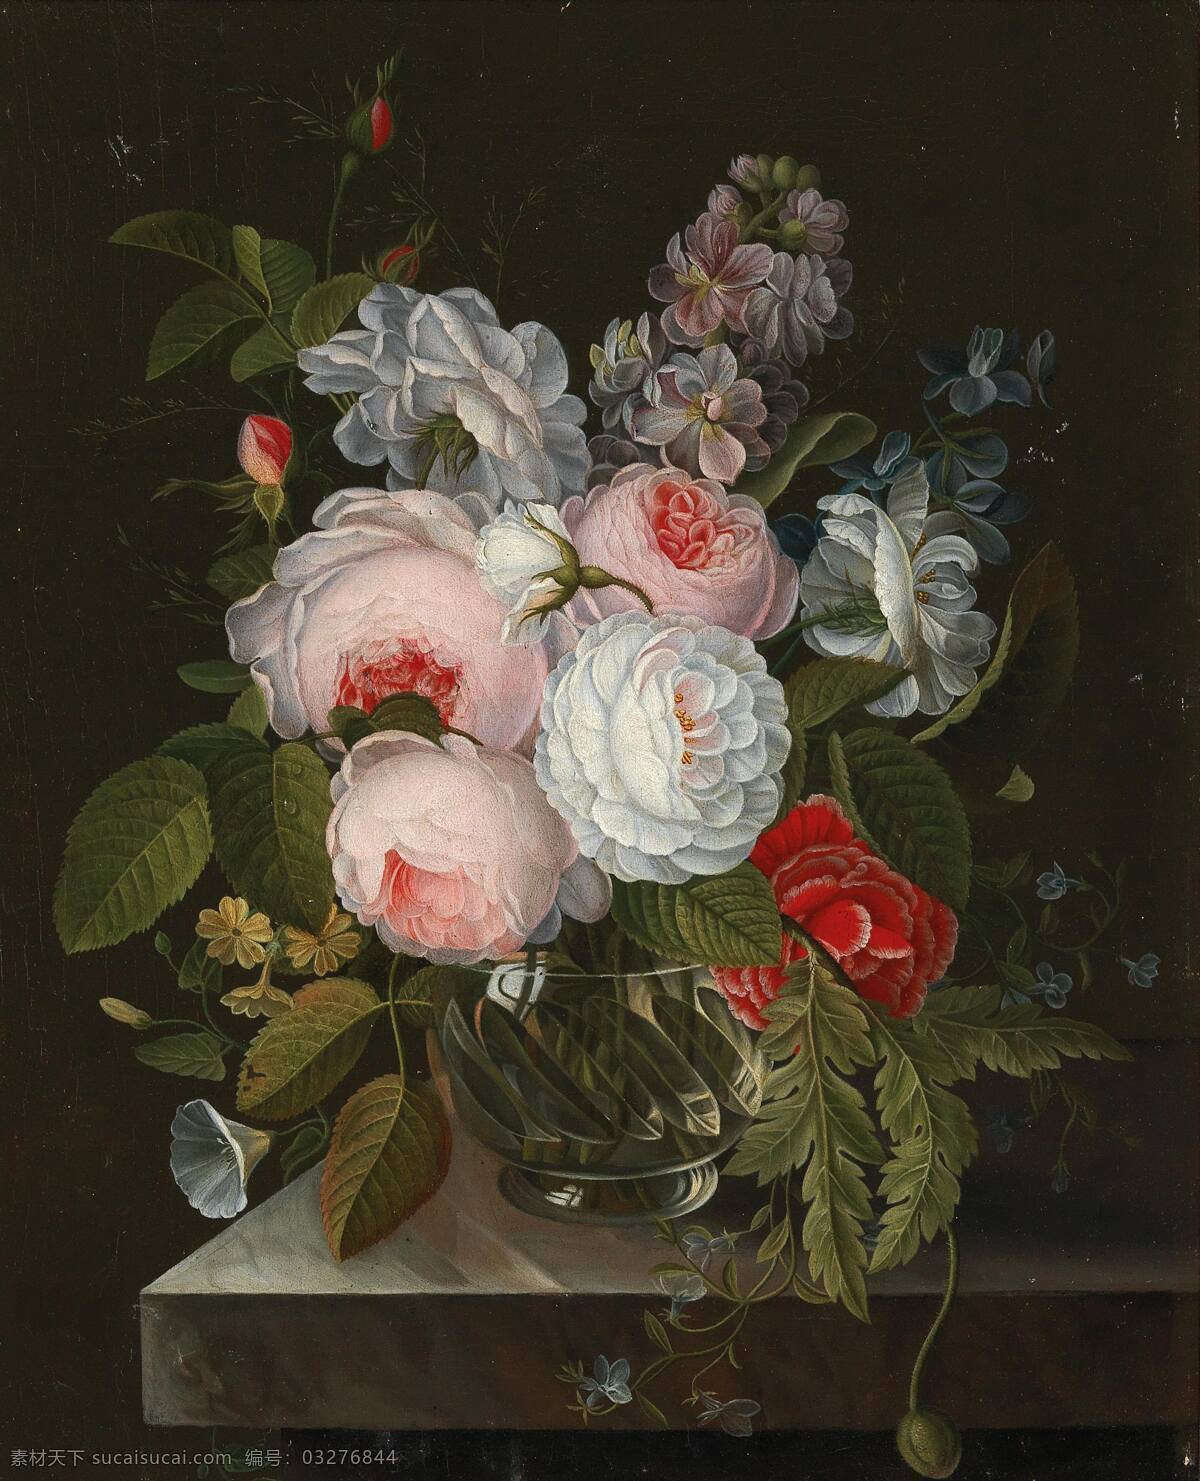 约翰 卡 斯帕 安东 迪勒 纽 斯 作品 静物鲜花 混搭鲜花 玫瑰 百合 玻璃花瓶 19世纪油画 油画 文化艺术 绘画书法